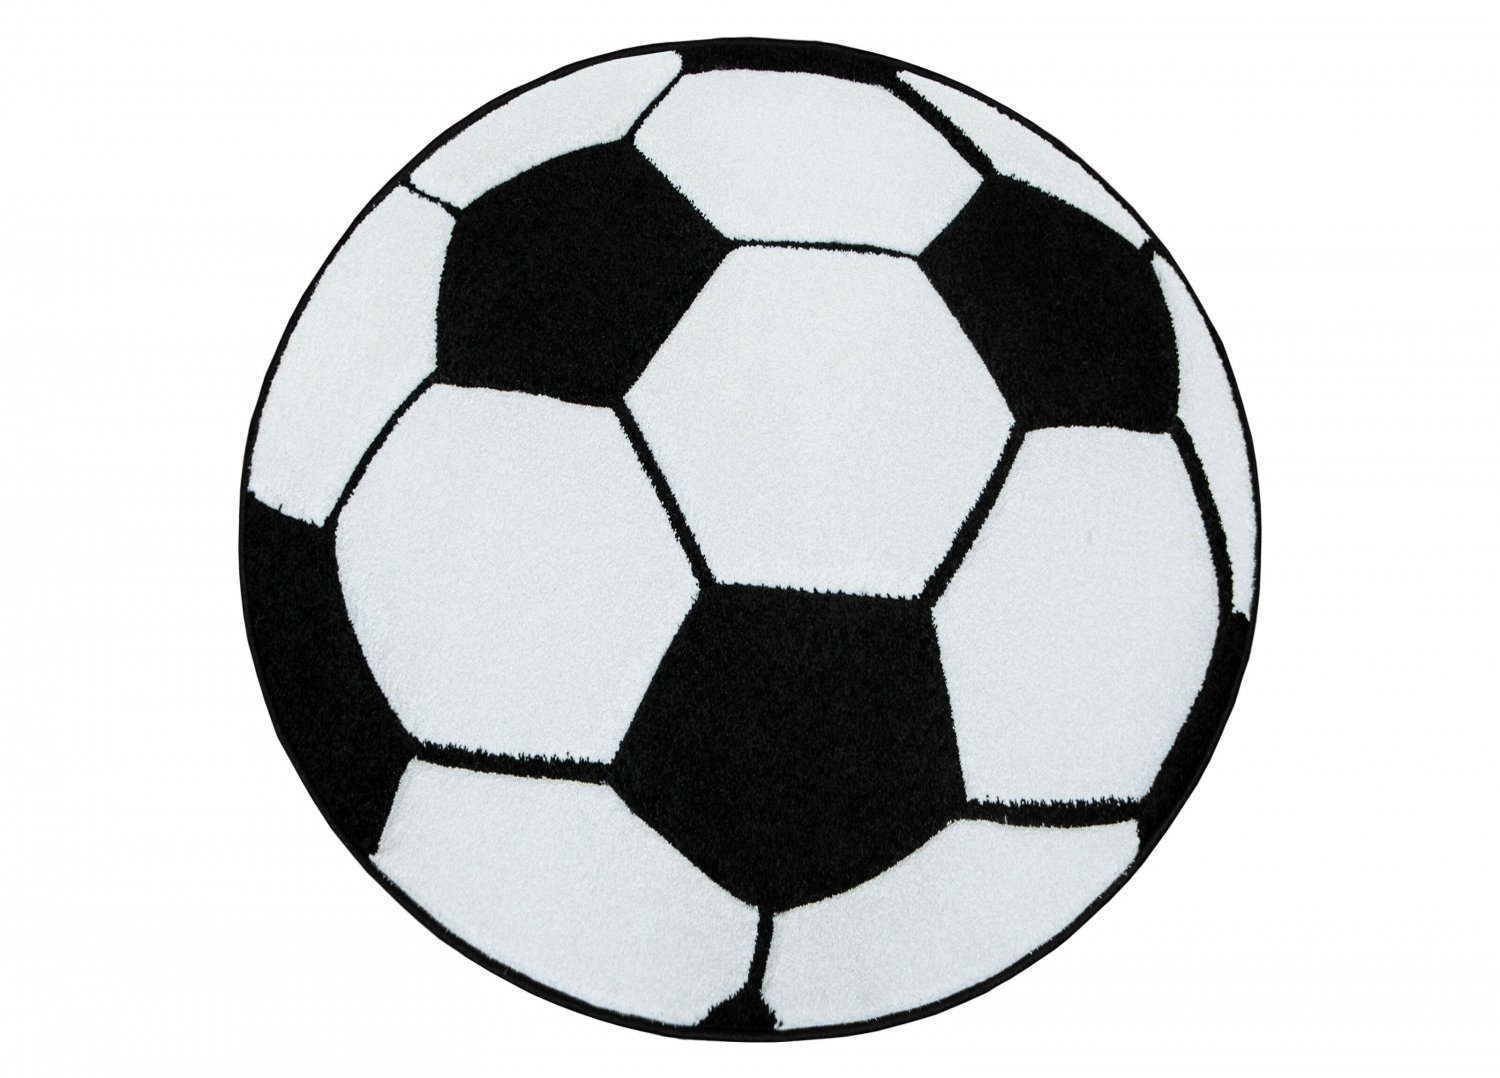 Teppiche für das Kinderzimmer
Kinderteppich
für junge Mädchen mit Tier Atlas Fotboll schwarz/weiß Fußball